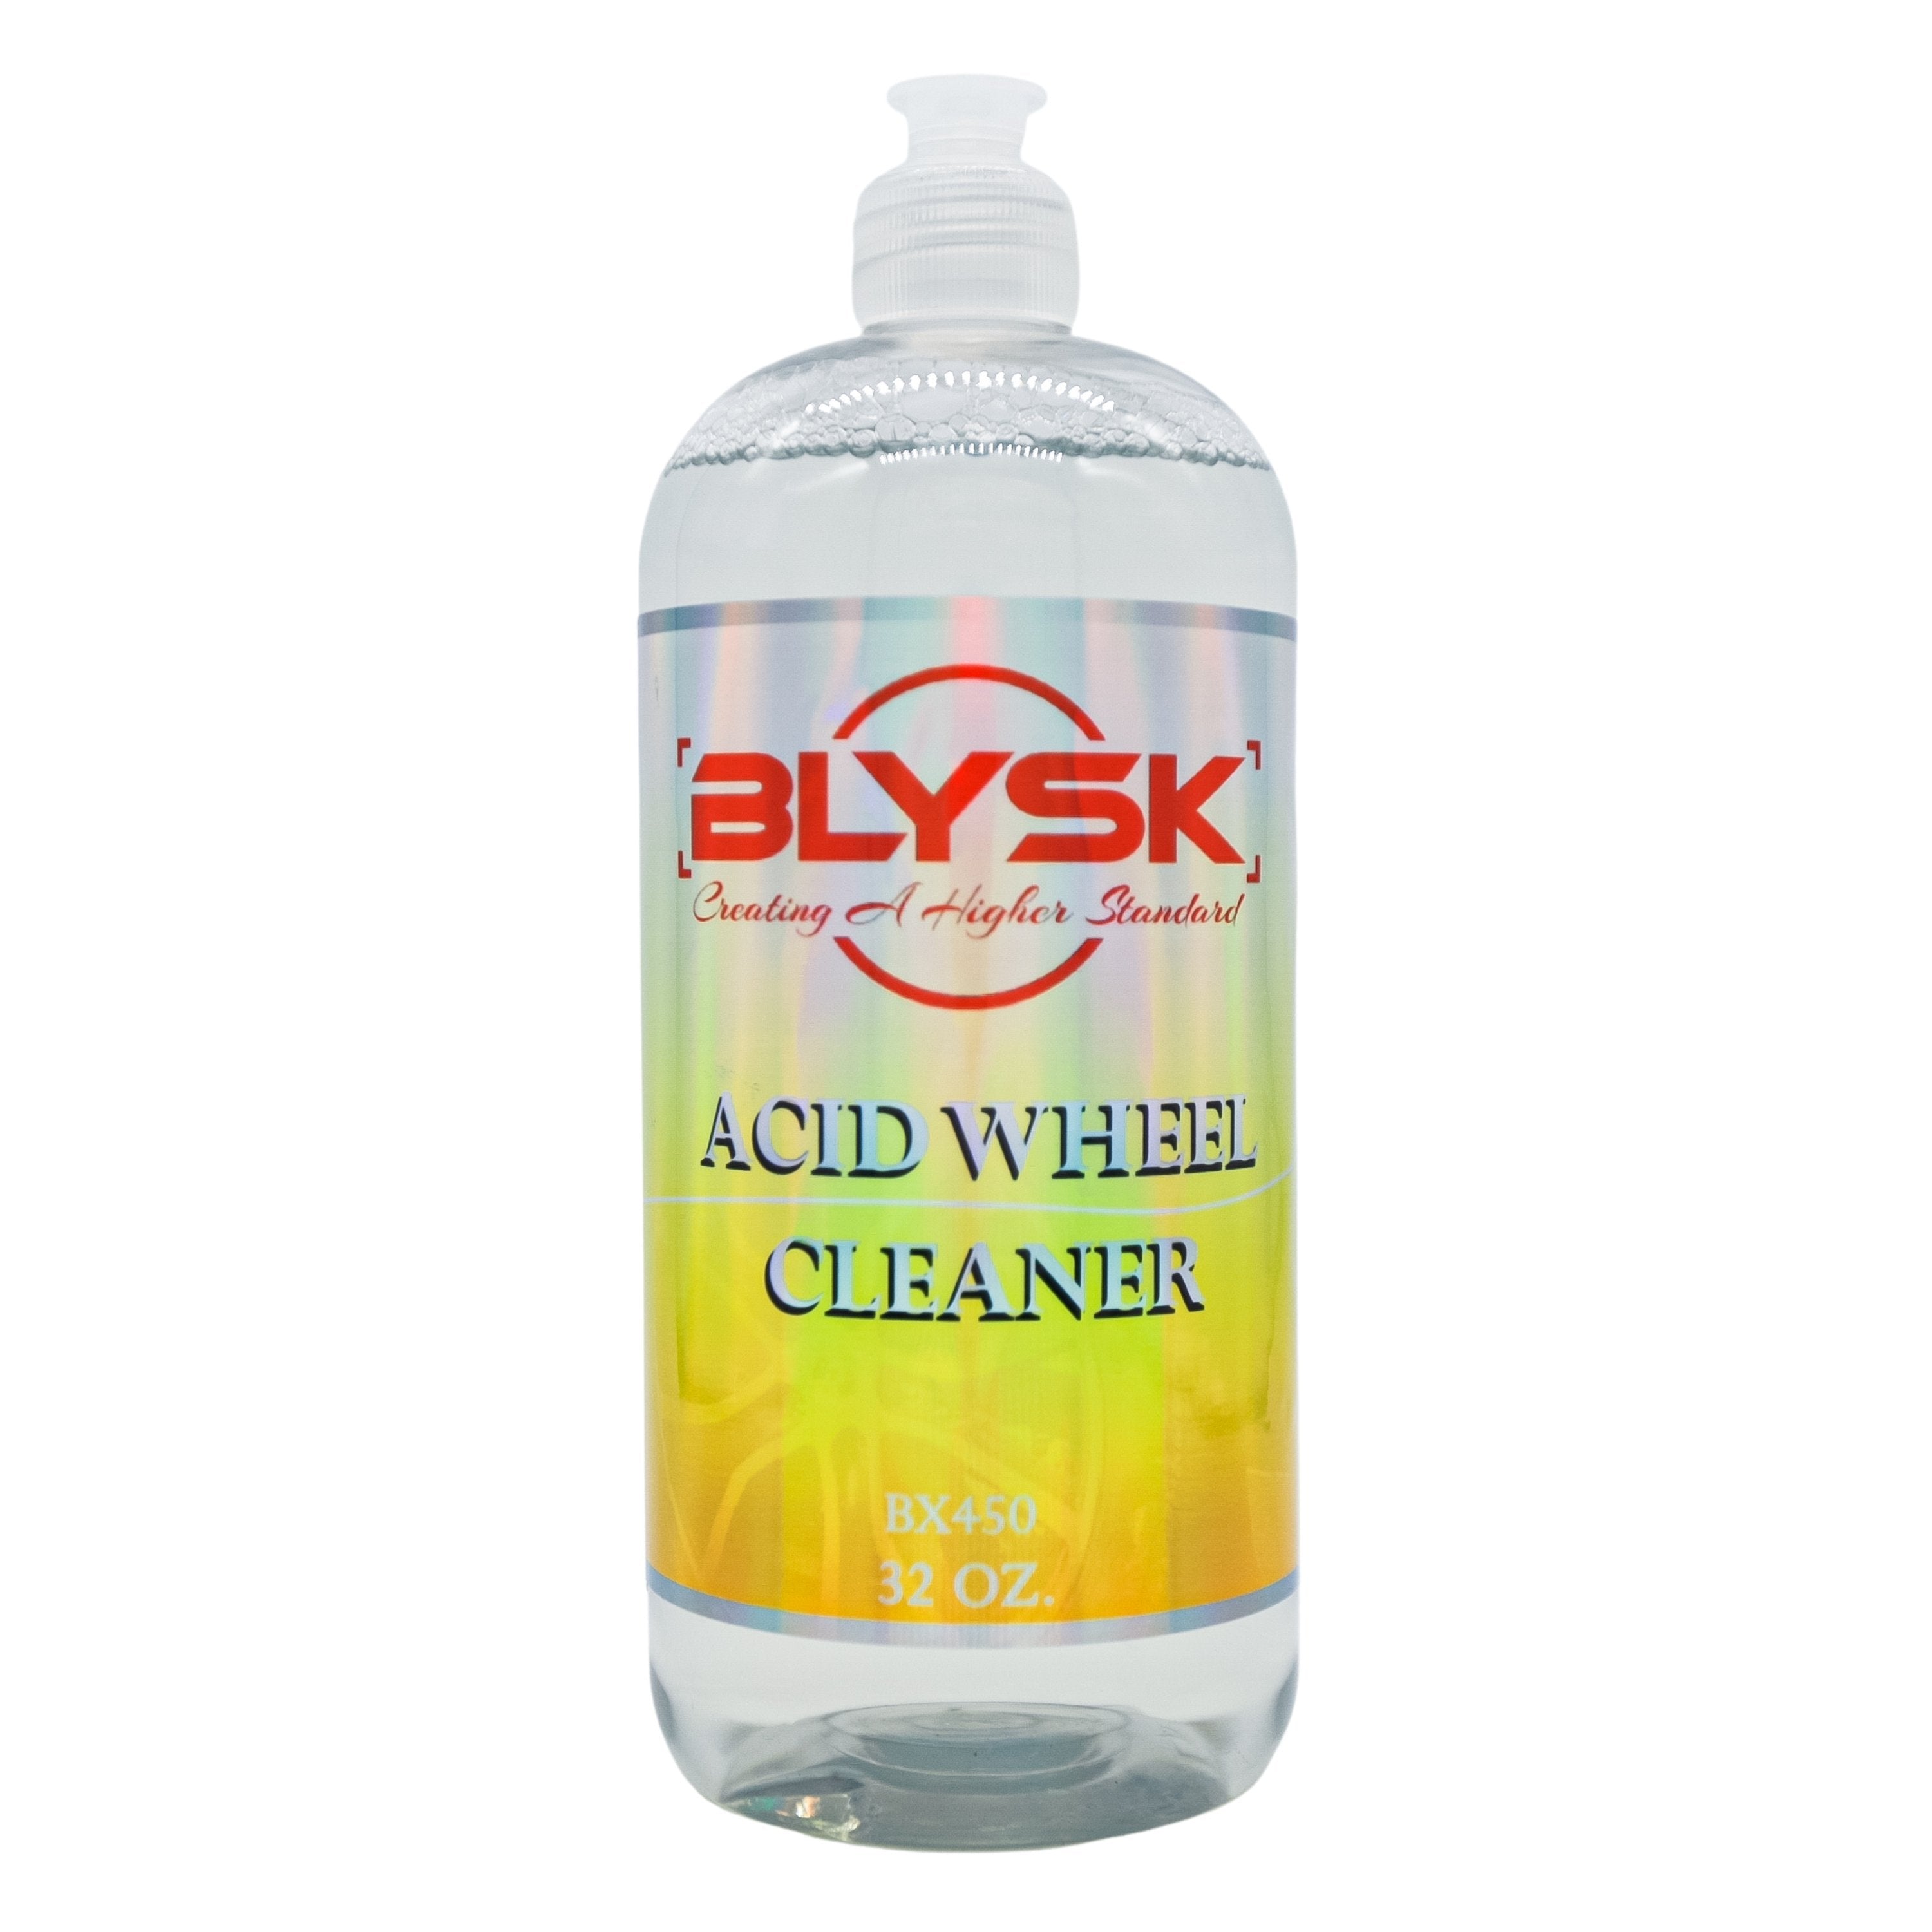 BLYSK Acid Wheel Cleaner